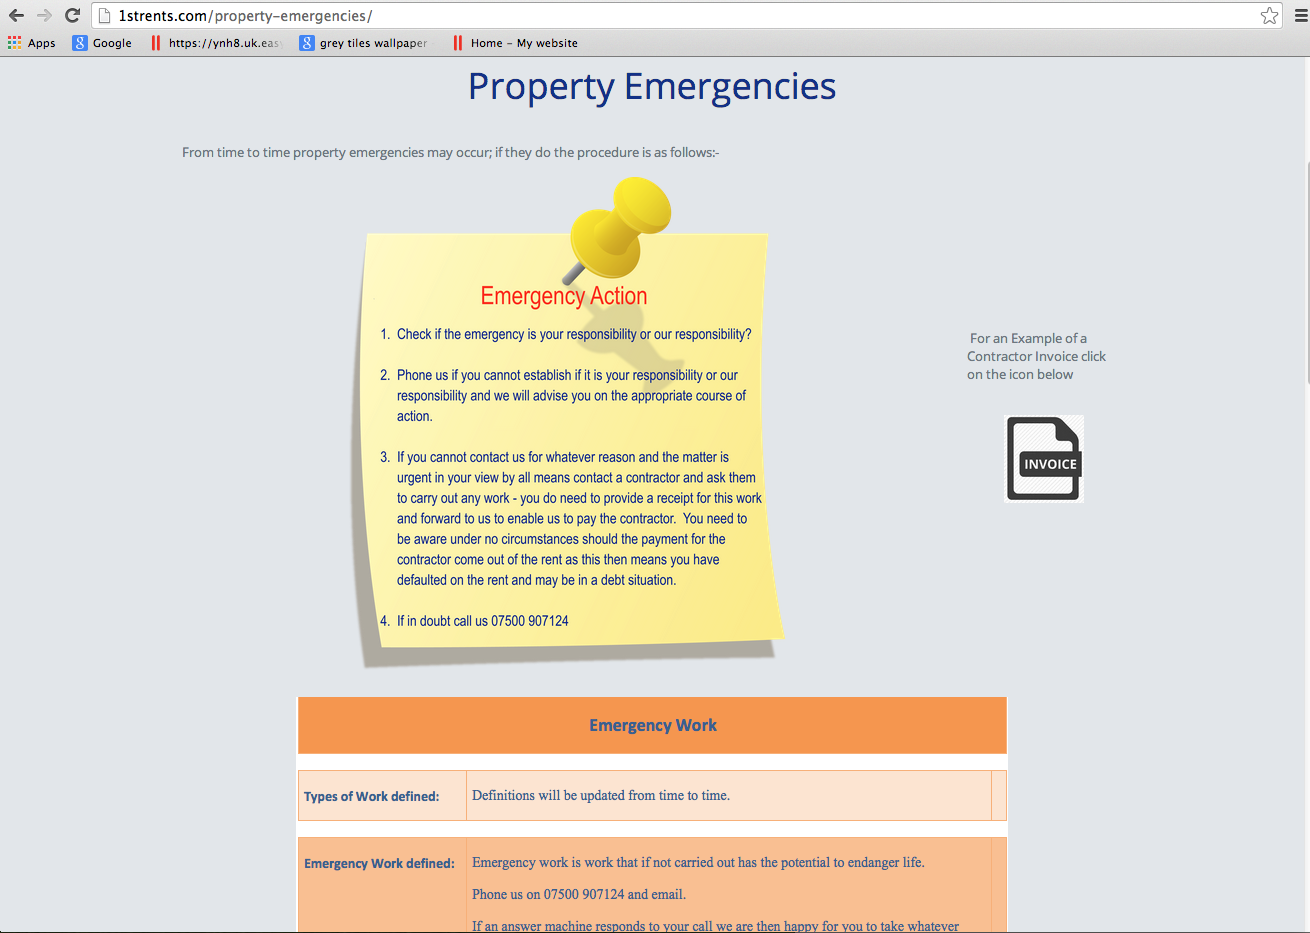 1strents.com - Property Emergencies